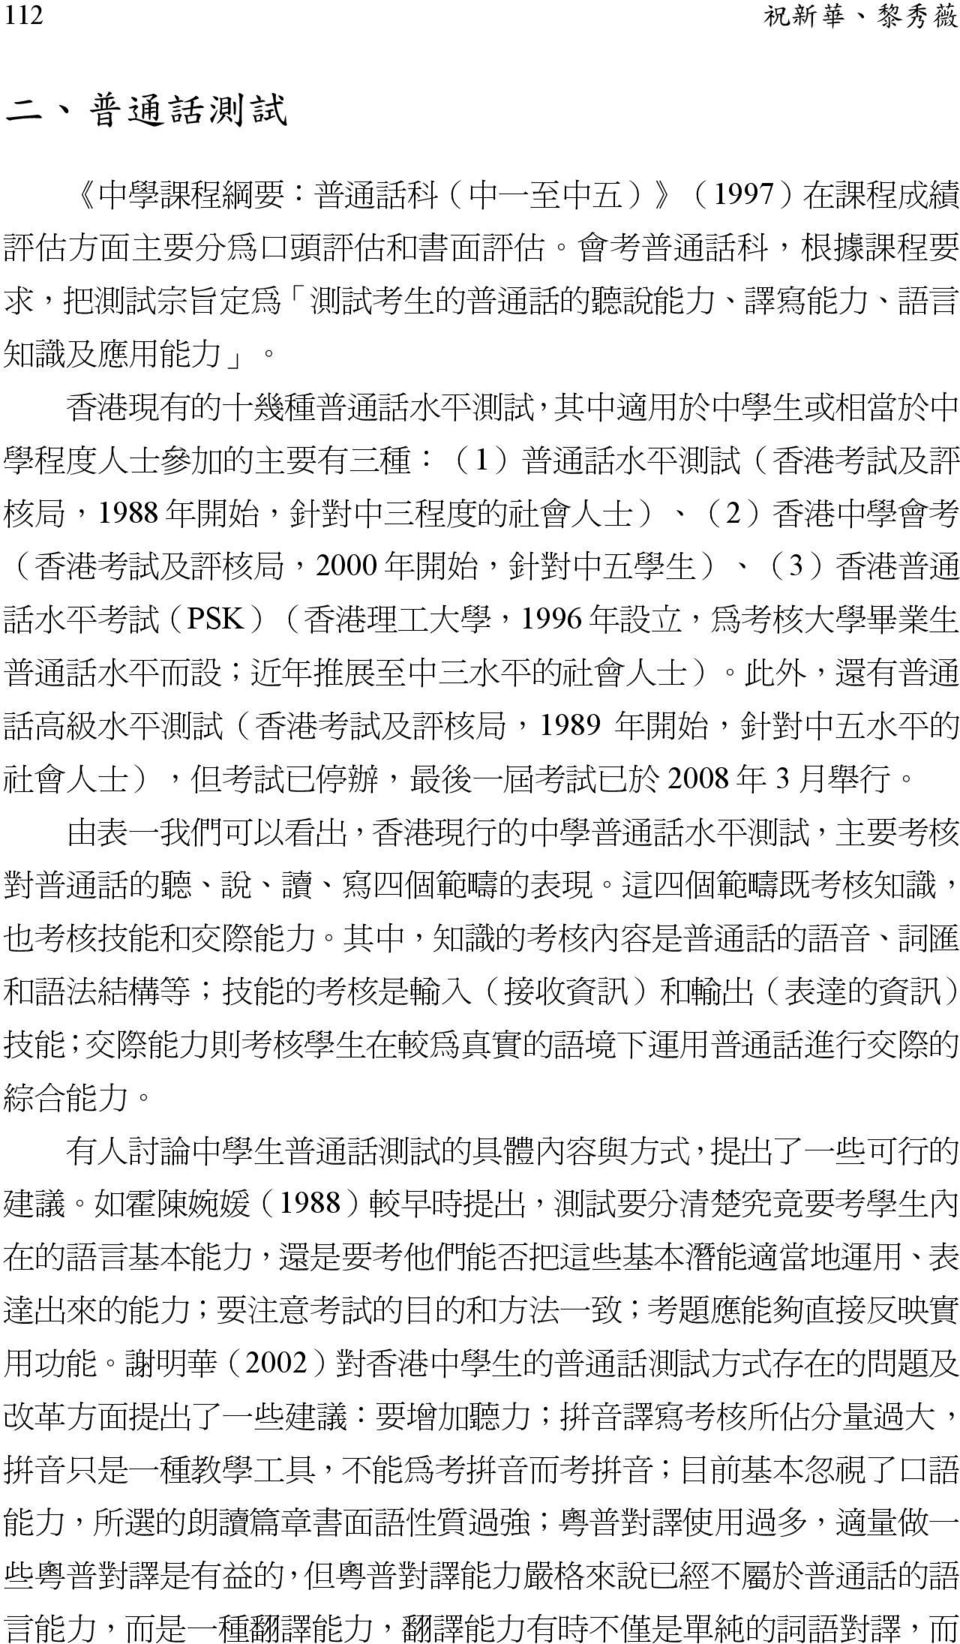 局,2000 年 開 始, 針 對 中 五 學 生 ) (3) 香 港 普 通 話 水 平 考 試 (PSK)( 香 港 理 工 大 學,1996 年 設 立, 為 考 核 大 學 畢 業 生 普 通 話 水 平 而 設 ; 近 年 推 展 至 中 三 水 平 的 社 會 人 士 ) 此 外, 還 有 普 通 話 高 級 水 平 測 試 ( 香 港 考 試 及 評 核 局,1989 年 開 始,